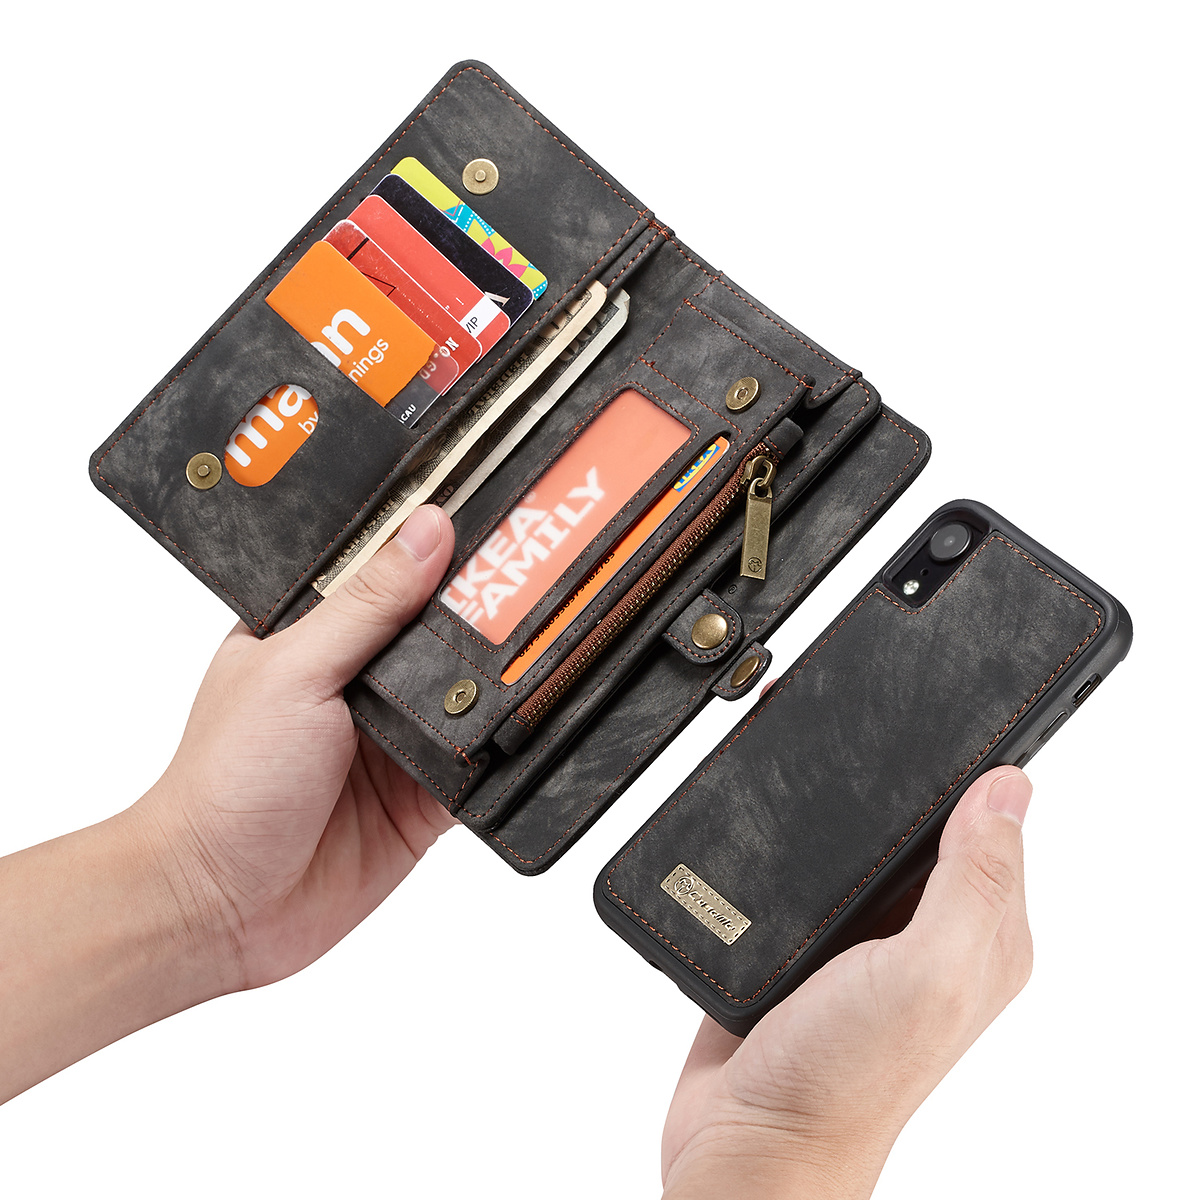 CaseMe plånboksfodral med magnetskal, iPhone XR, svart